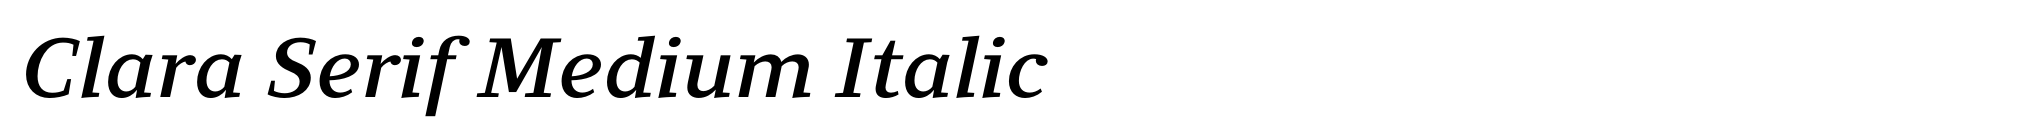 Clara Serif Medium Italic image